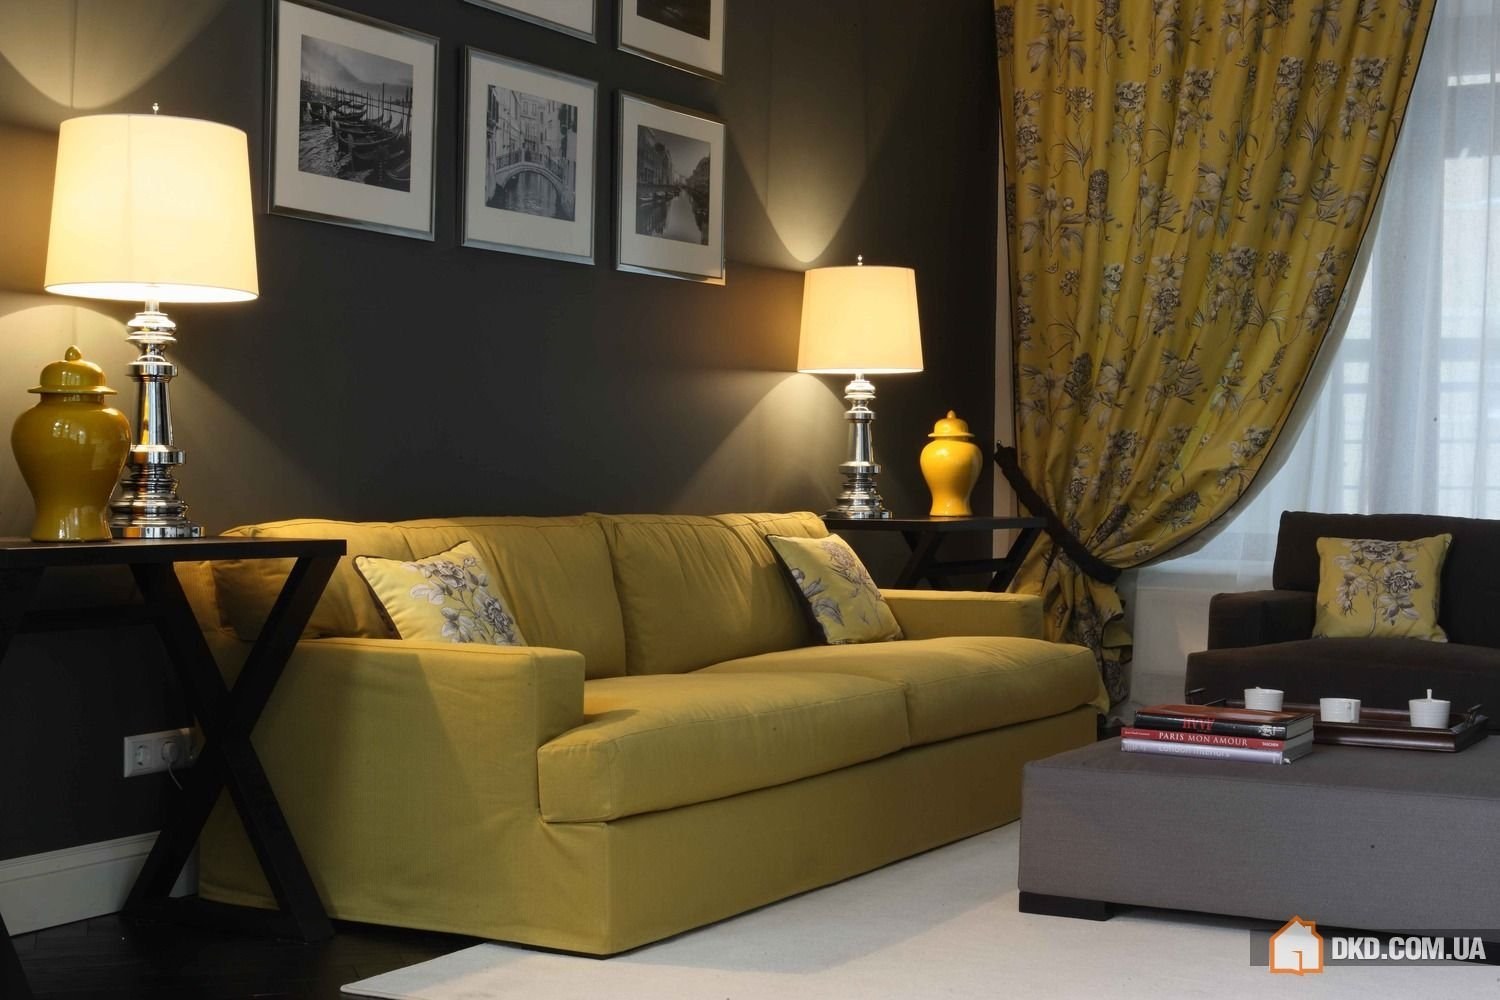 Горчичные обои. Желтый диван в интерьере. Желтый в интерьере гостиной. Интерьер в горчичных тонах. Интерьер в желтых тонах.